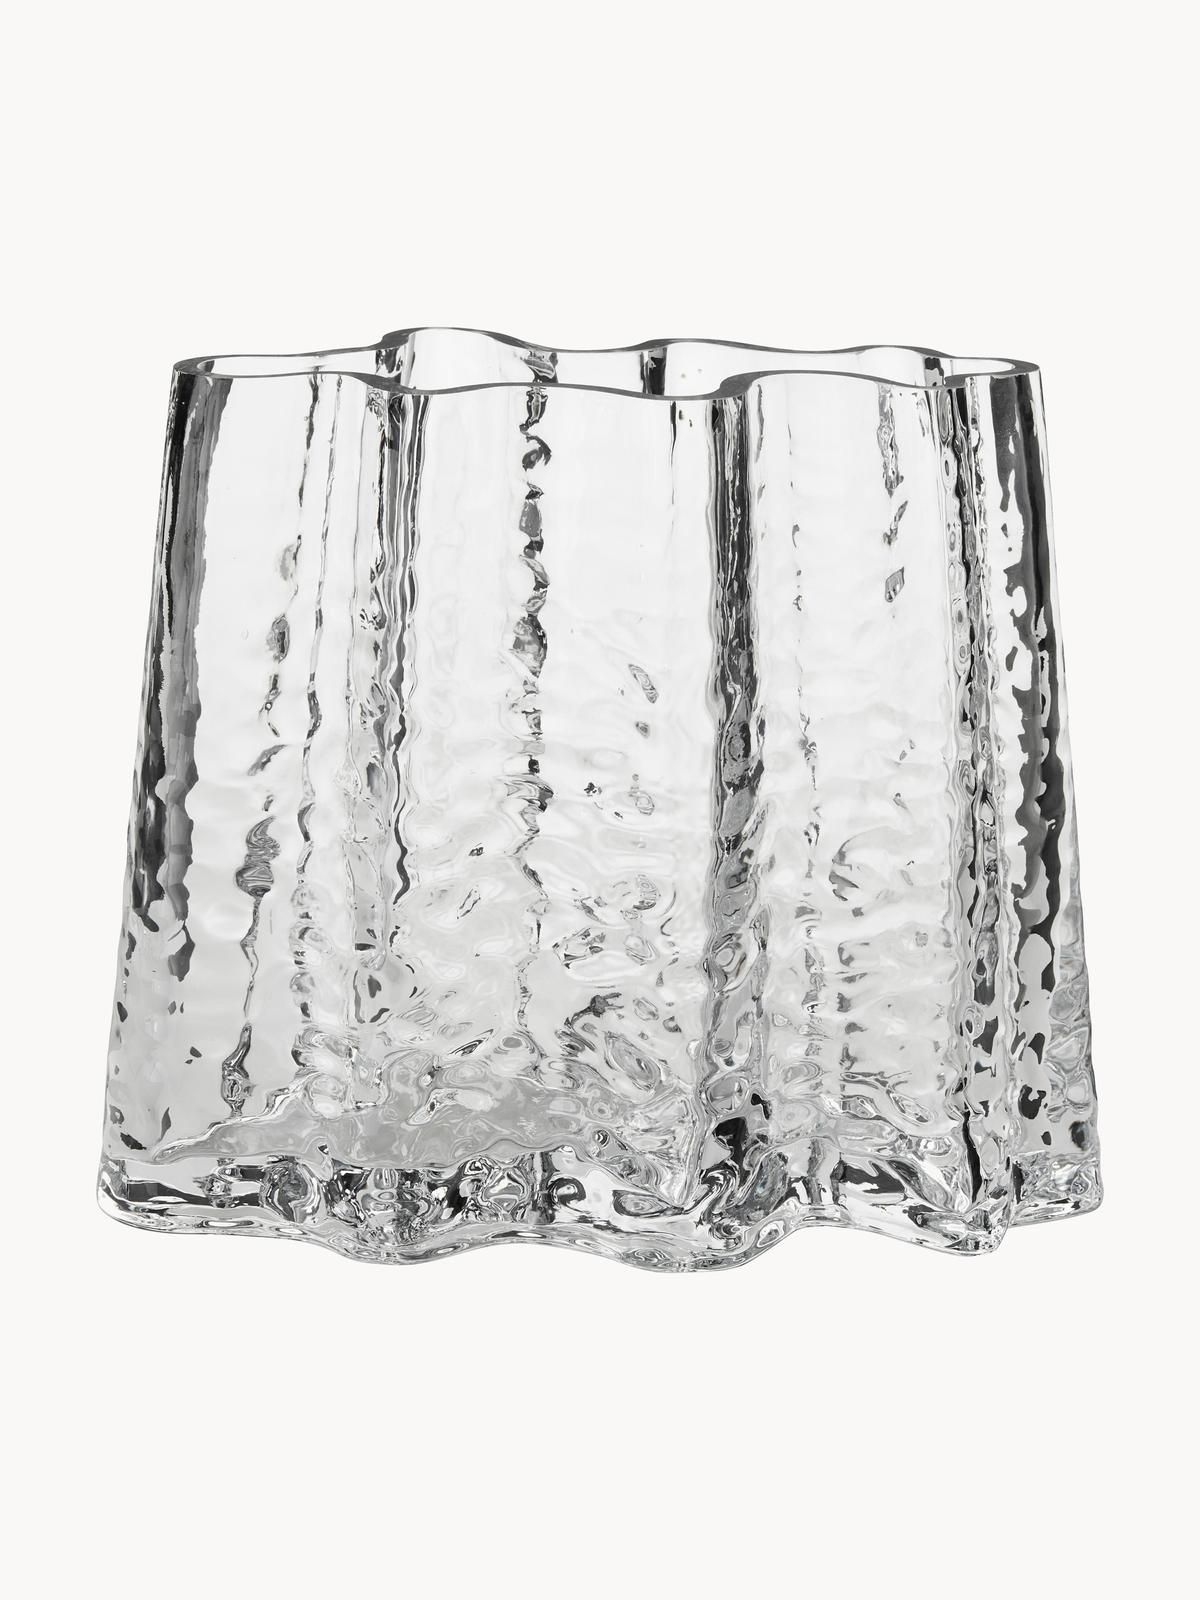 Mundgeblasene Glas-Vase Gry mit strukturierter Oberfläche, H 19 cm von Cooee Design